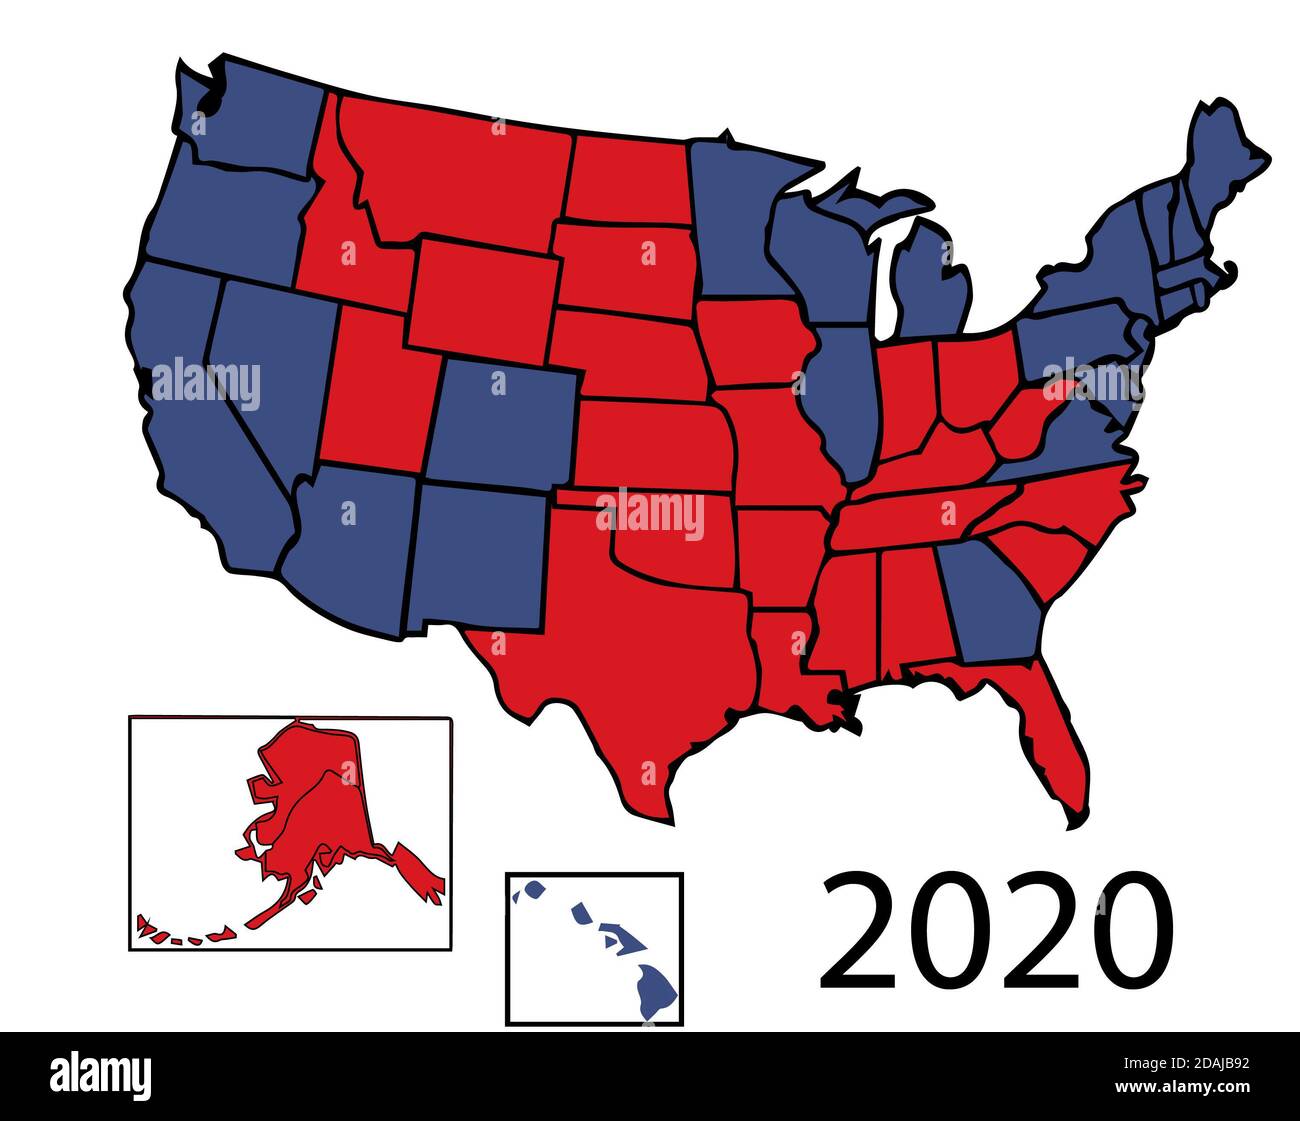 2020 General Presidential Wahlkarte von 50 USA Koloriert in Republikanisches Rot, Demokrat Blau. Stockfoto